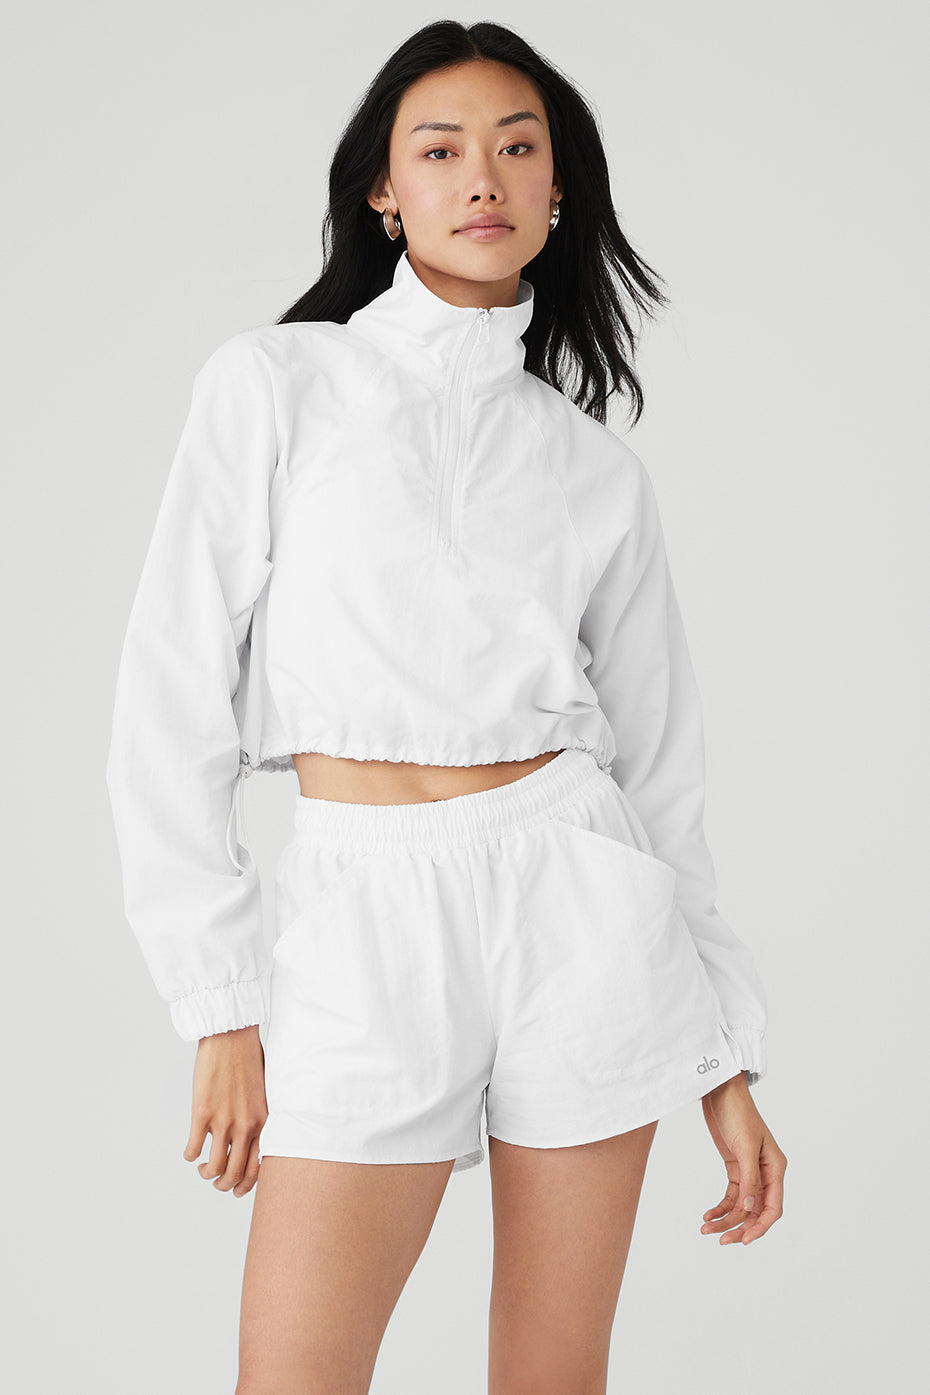 ALO Yoga, Jackets & Coats, Womens Alo Yoga Zip Up Cropped Clubhouse  Jacket Coat Lightweight Sz Medium White